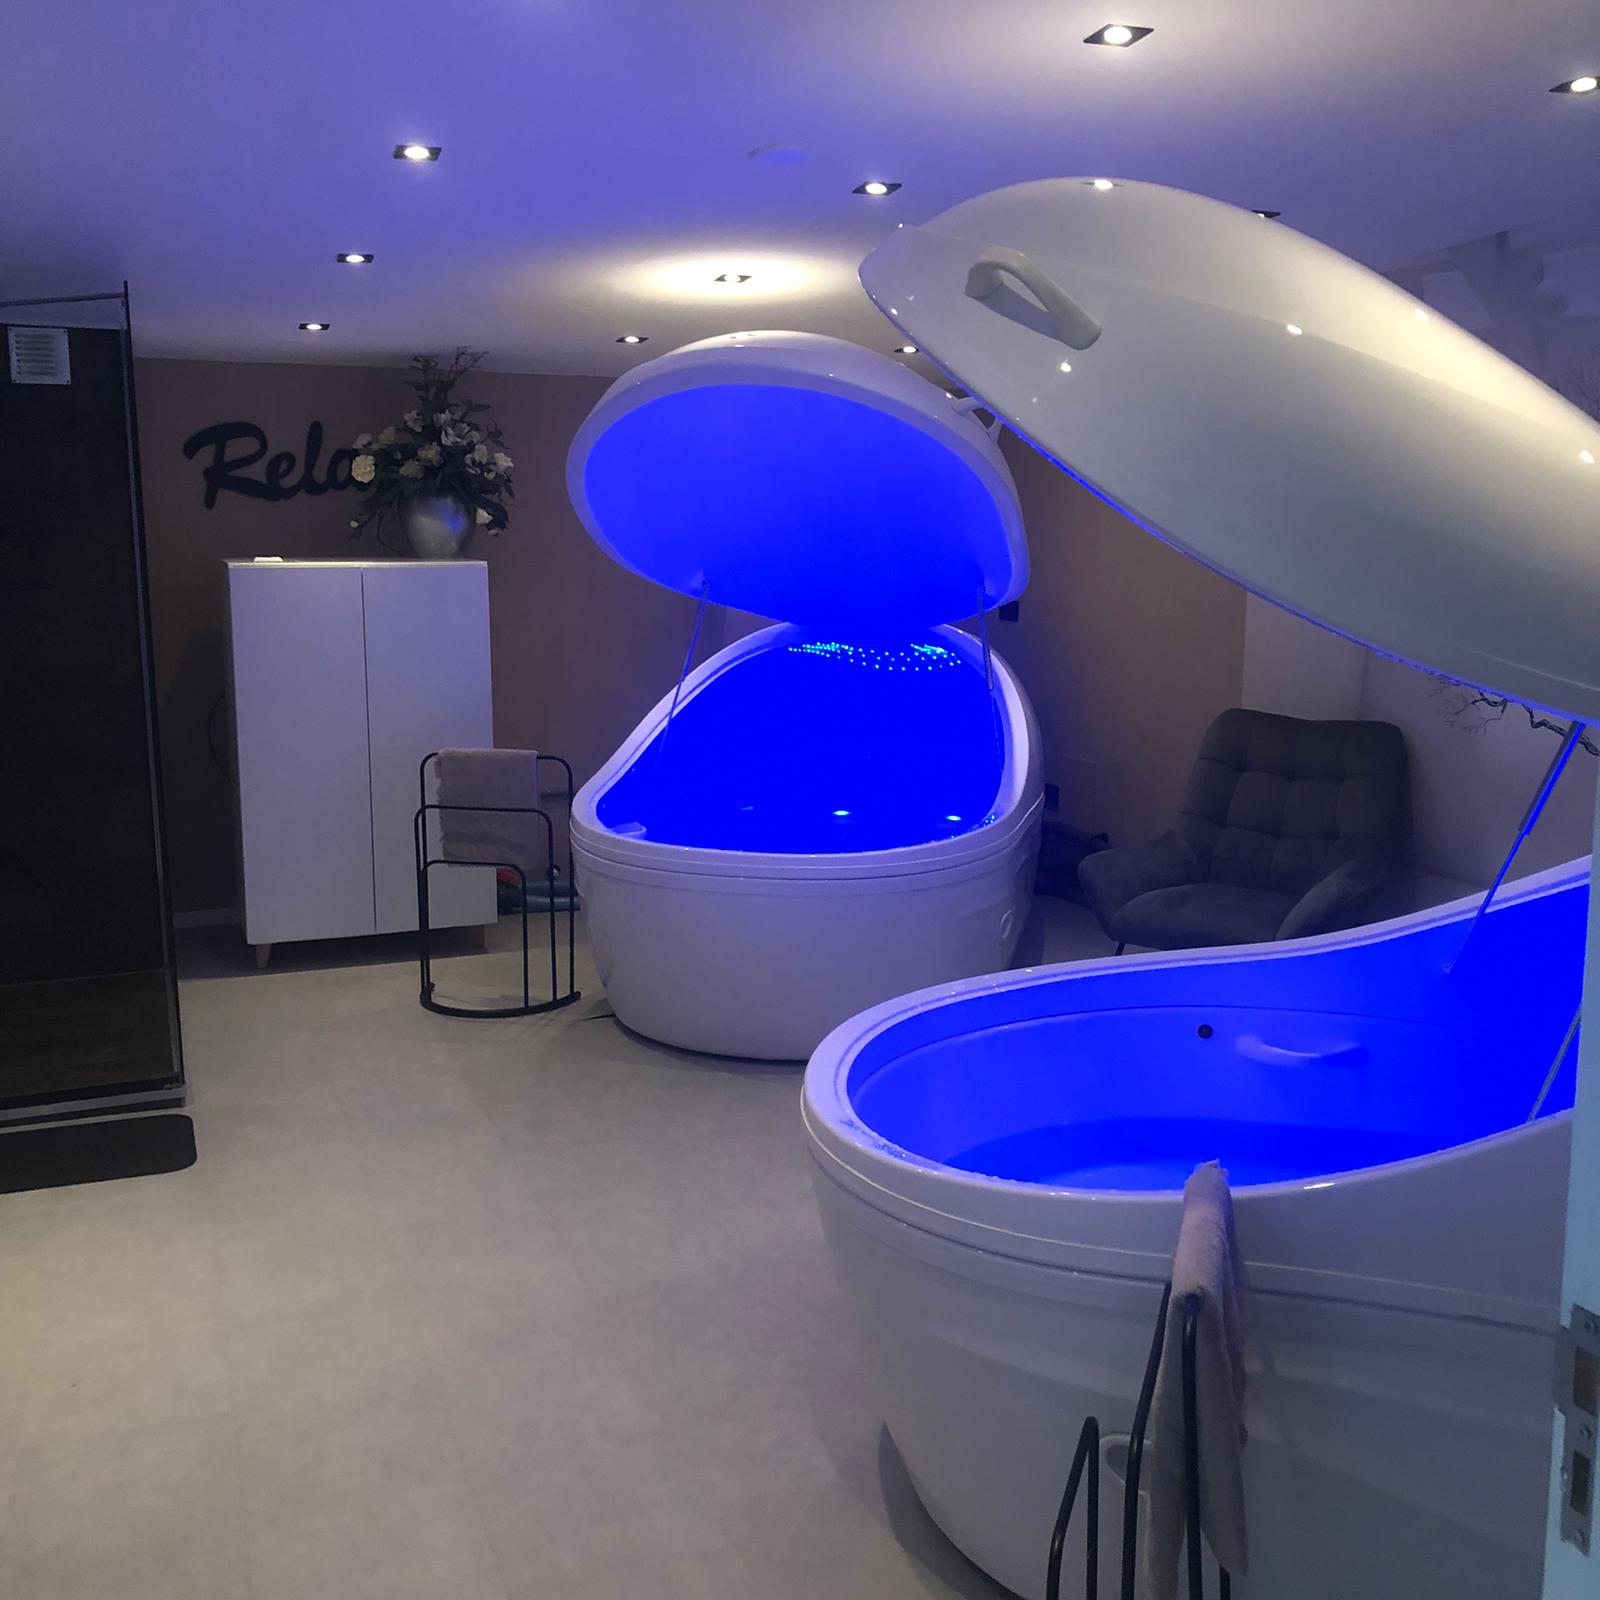 2x nagenoeg nieuwe floatbaden/cabine inclusief 1 technische installatie voor beide baden